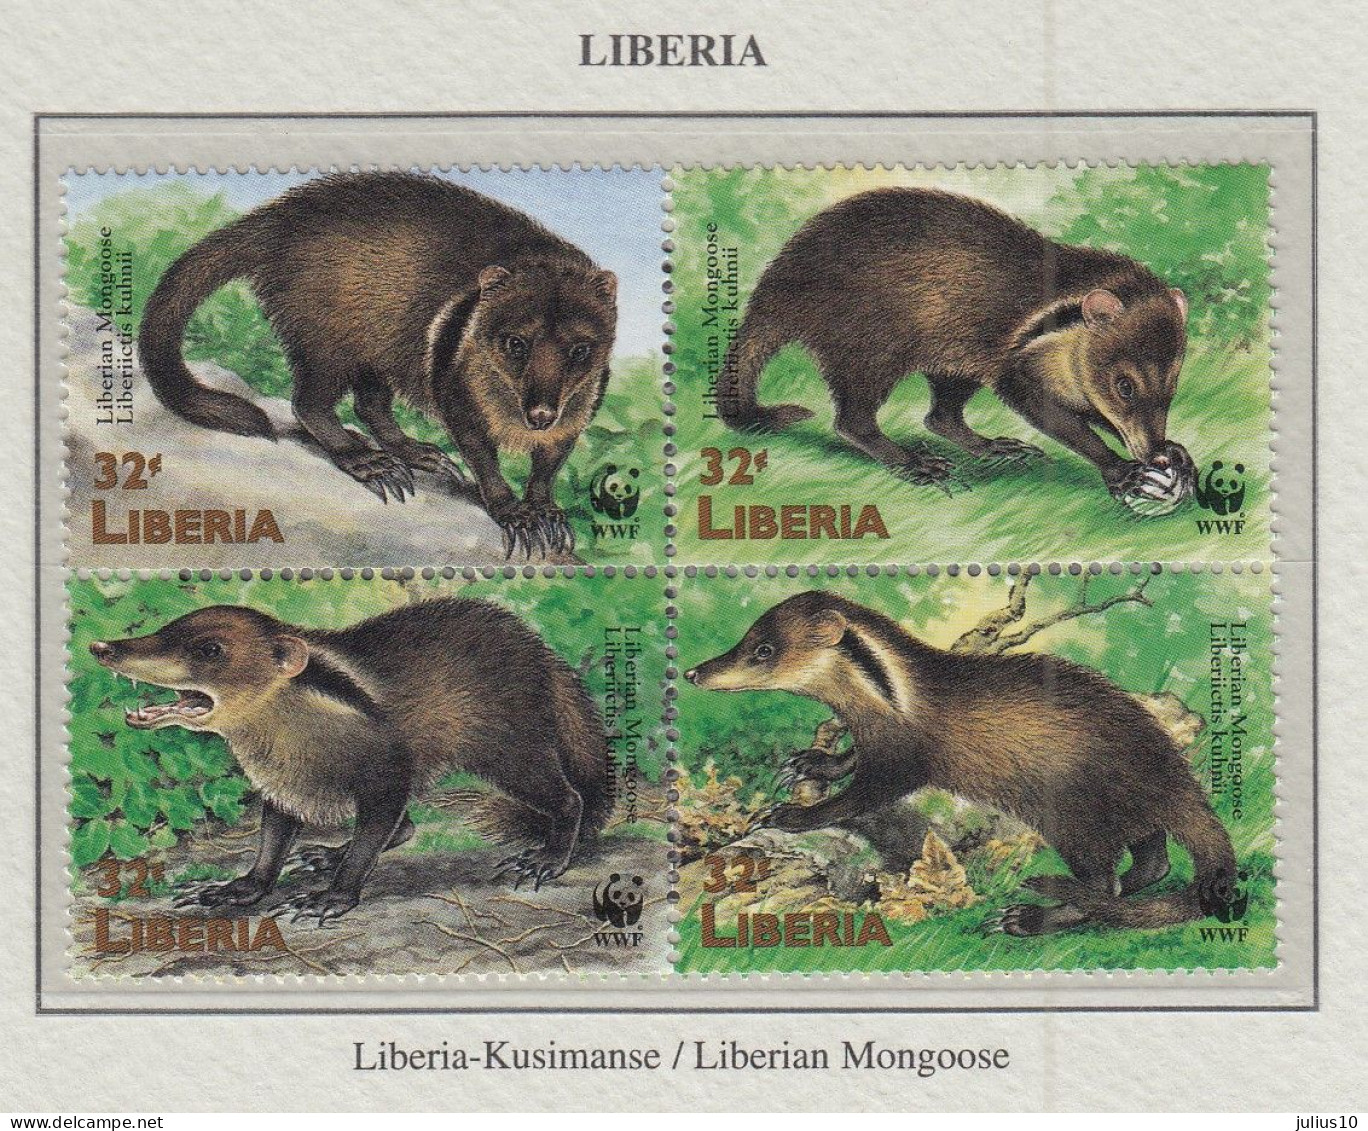 LIBERIA 1998 WWF Animals Manguste Mi 2040-2043 MNH Fauna 595 - Ungebraucht